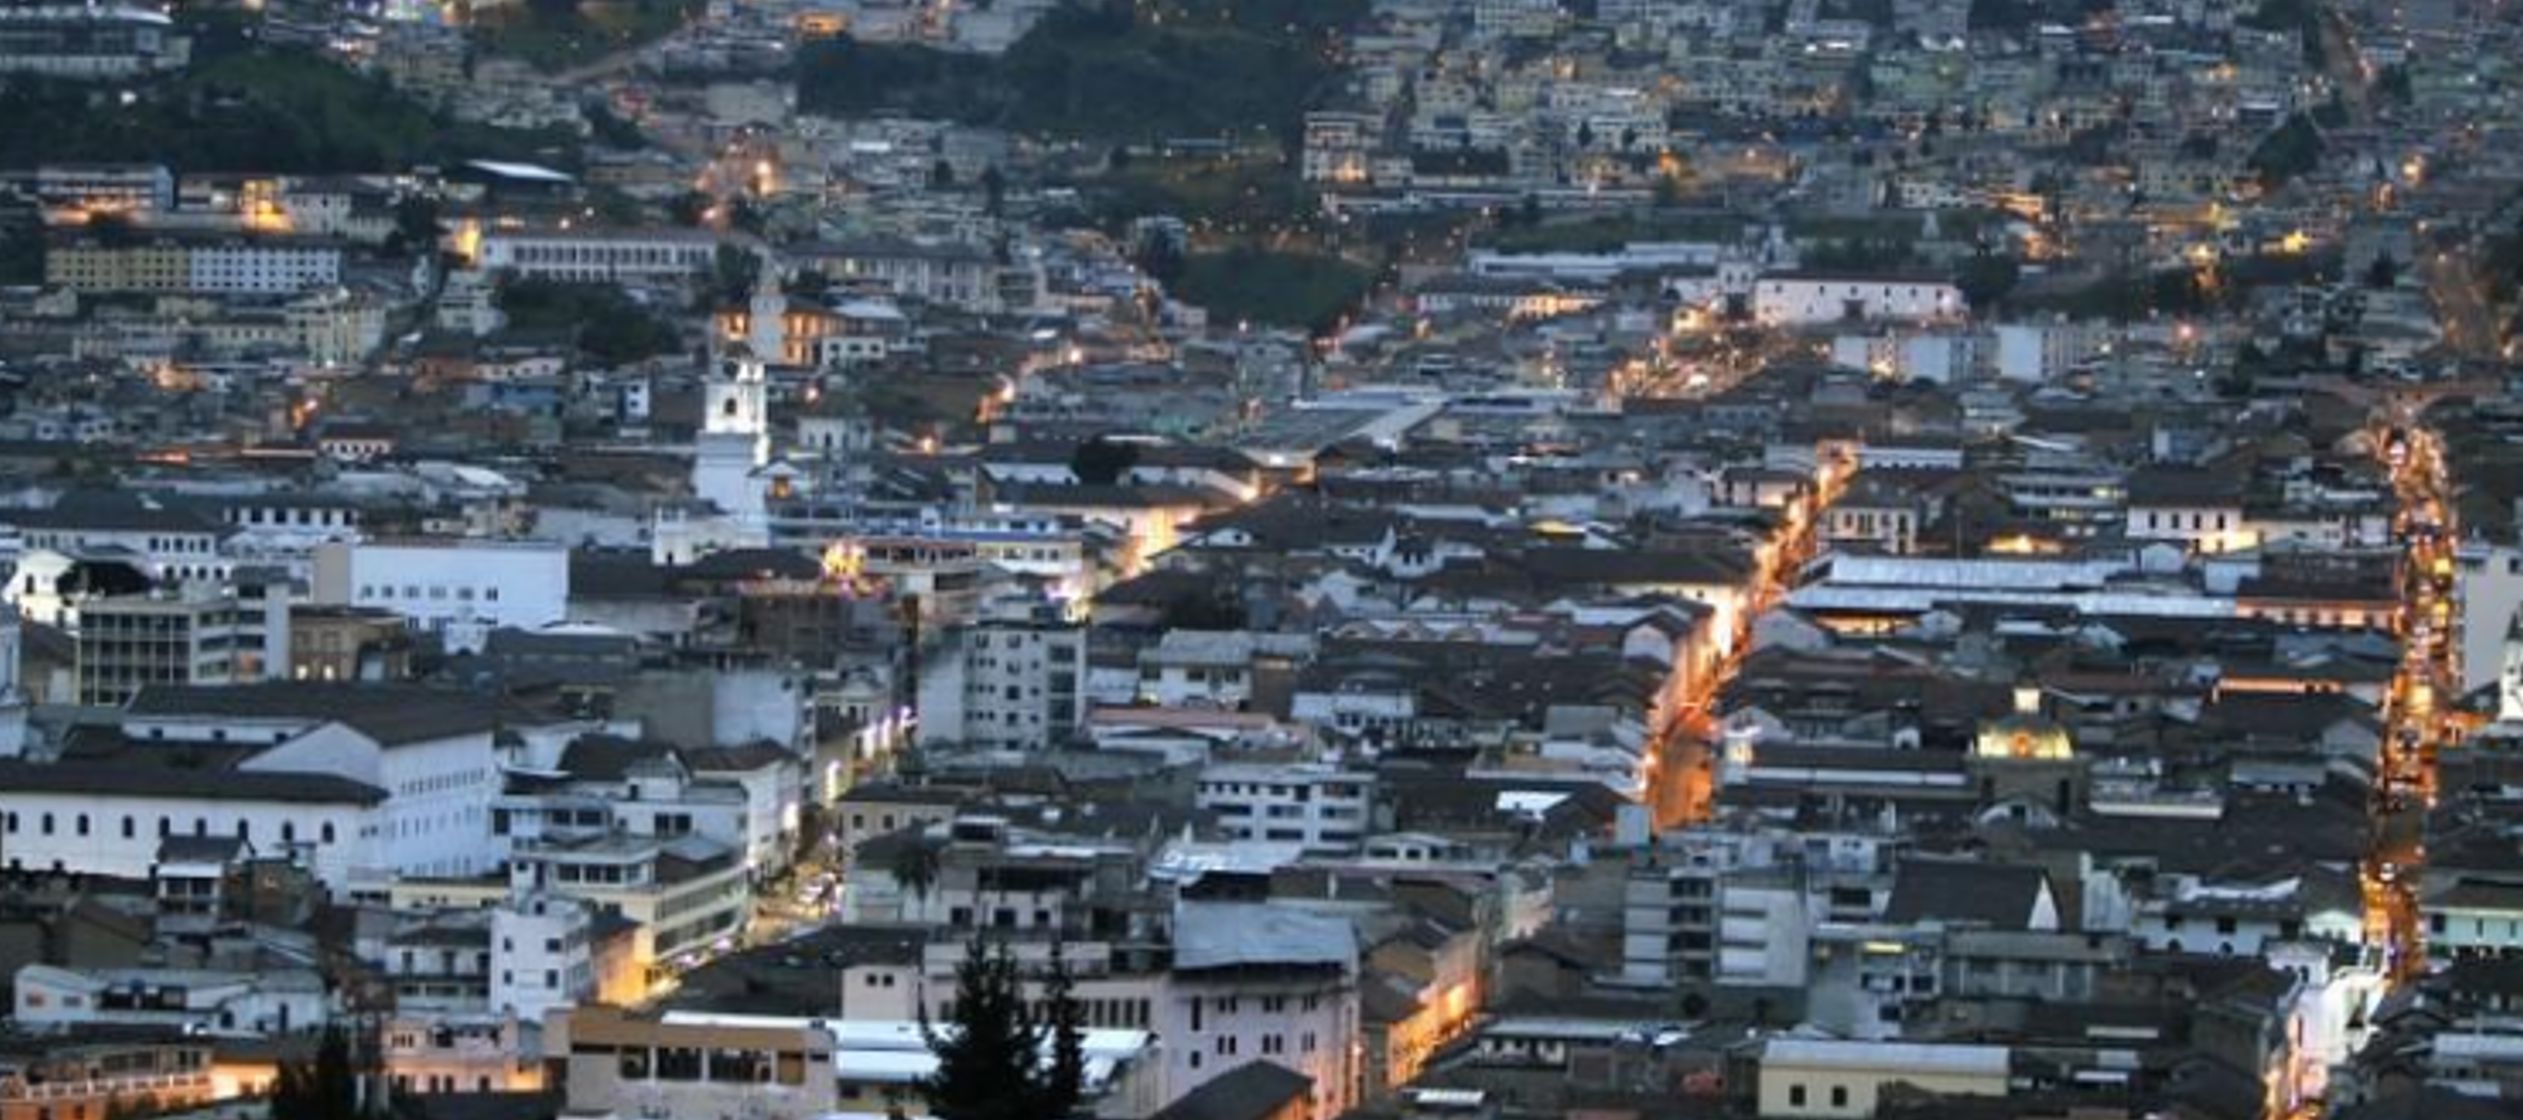 Para Moody's, Ecuador se ha visto afectado por factores internos y externos que han golpeado...